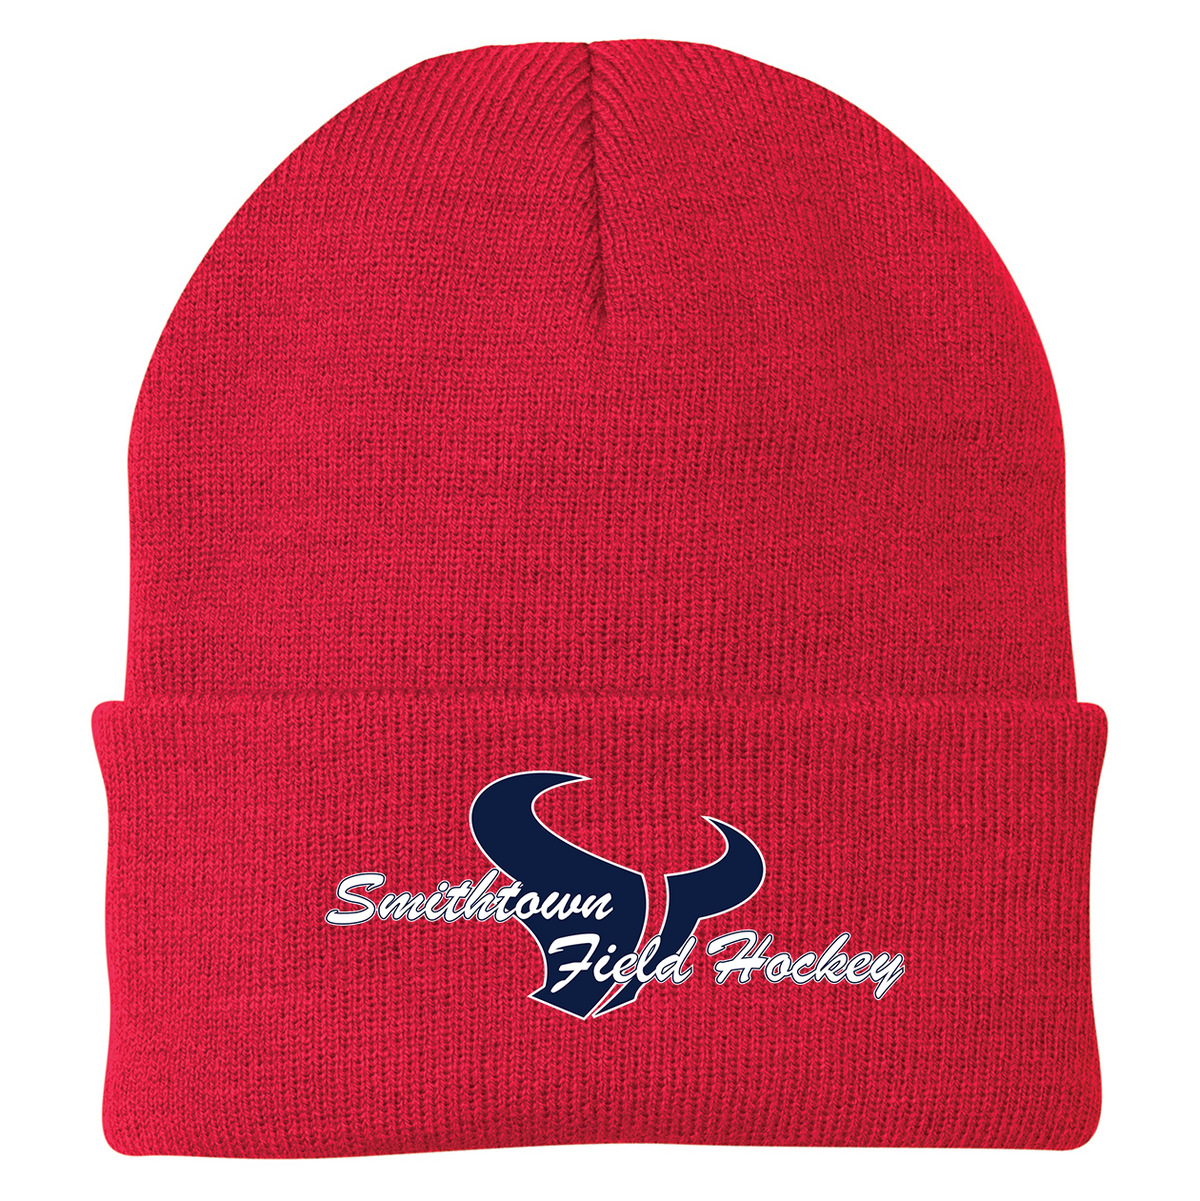 Smithtown Field Hockey Knit Beanie